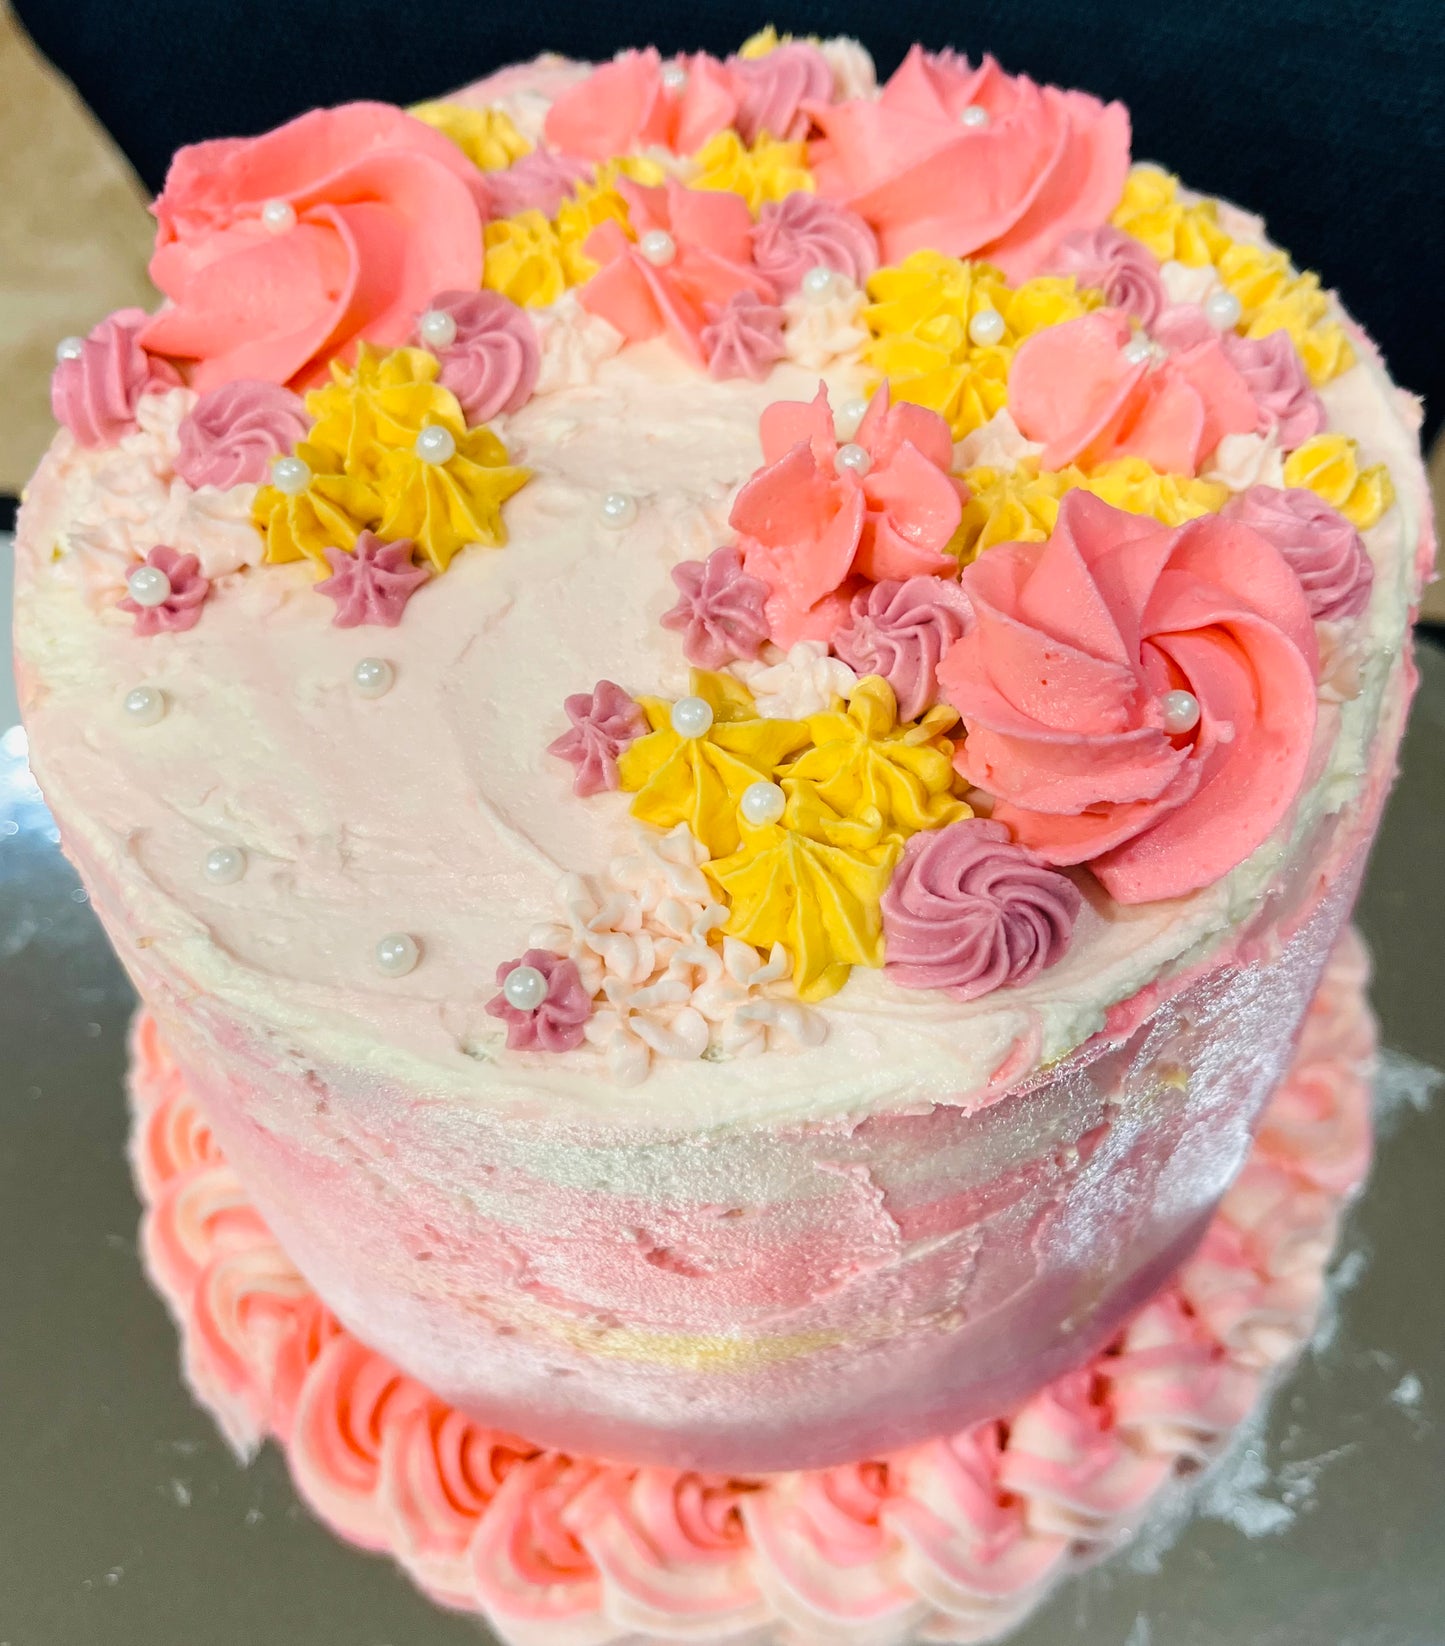 5/25 Cake Decorating Workshop